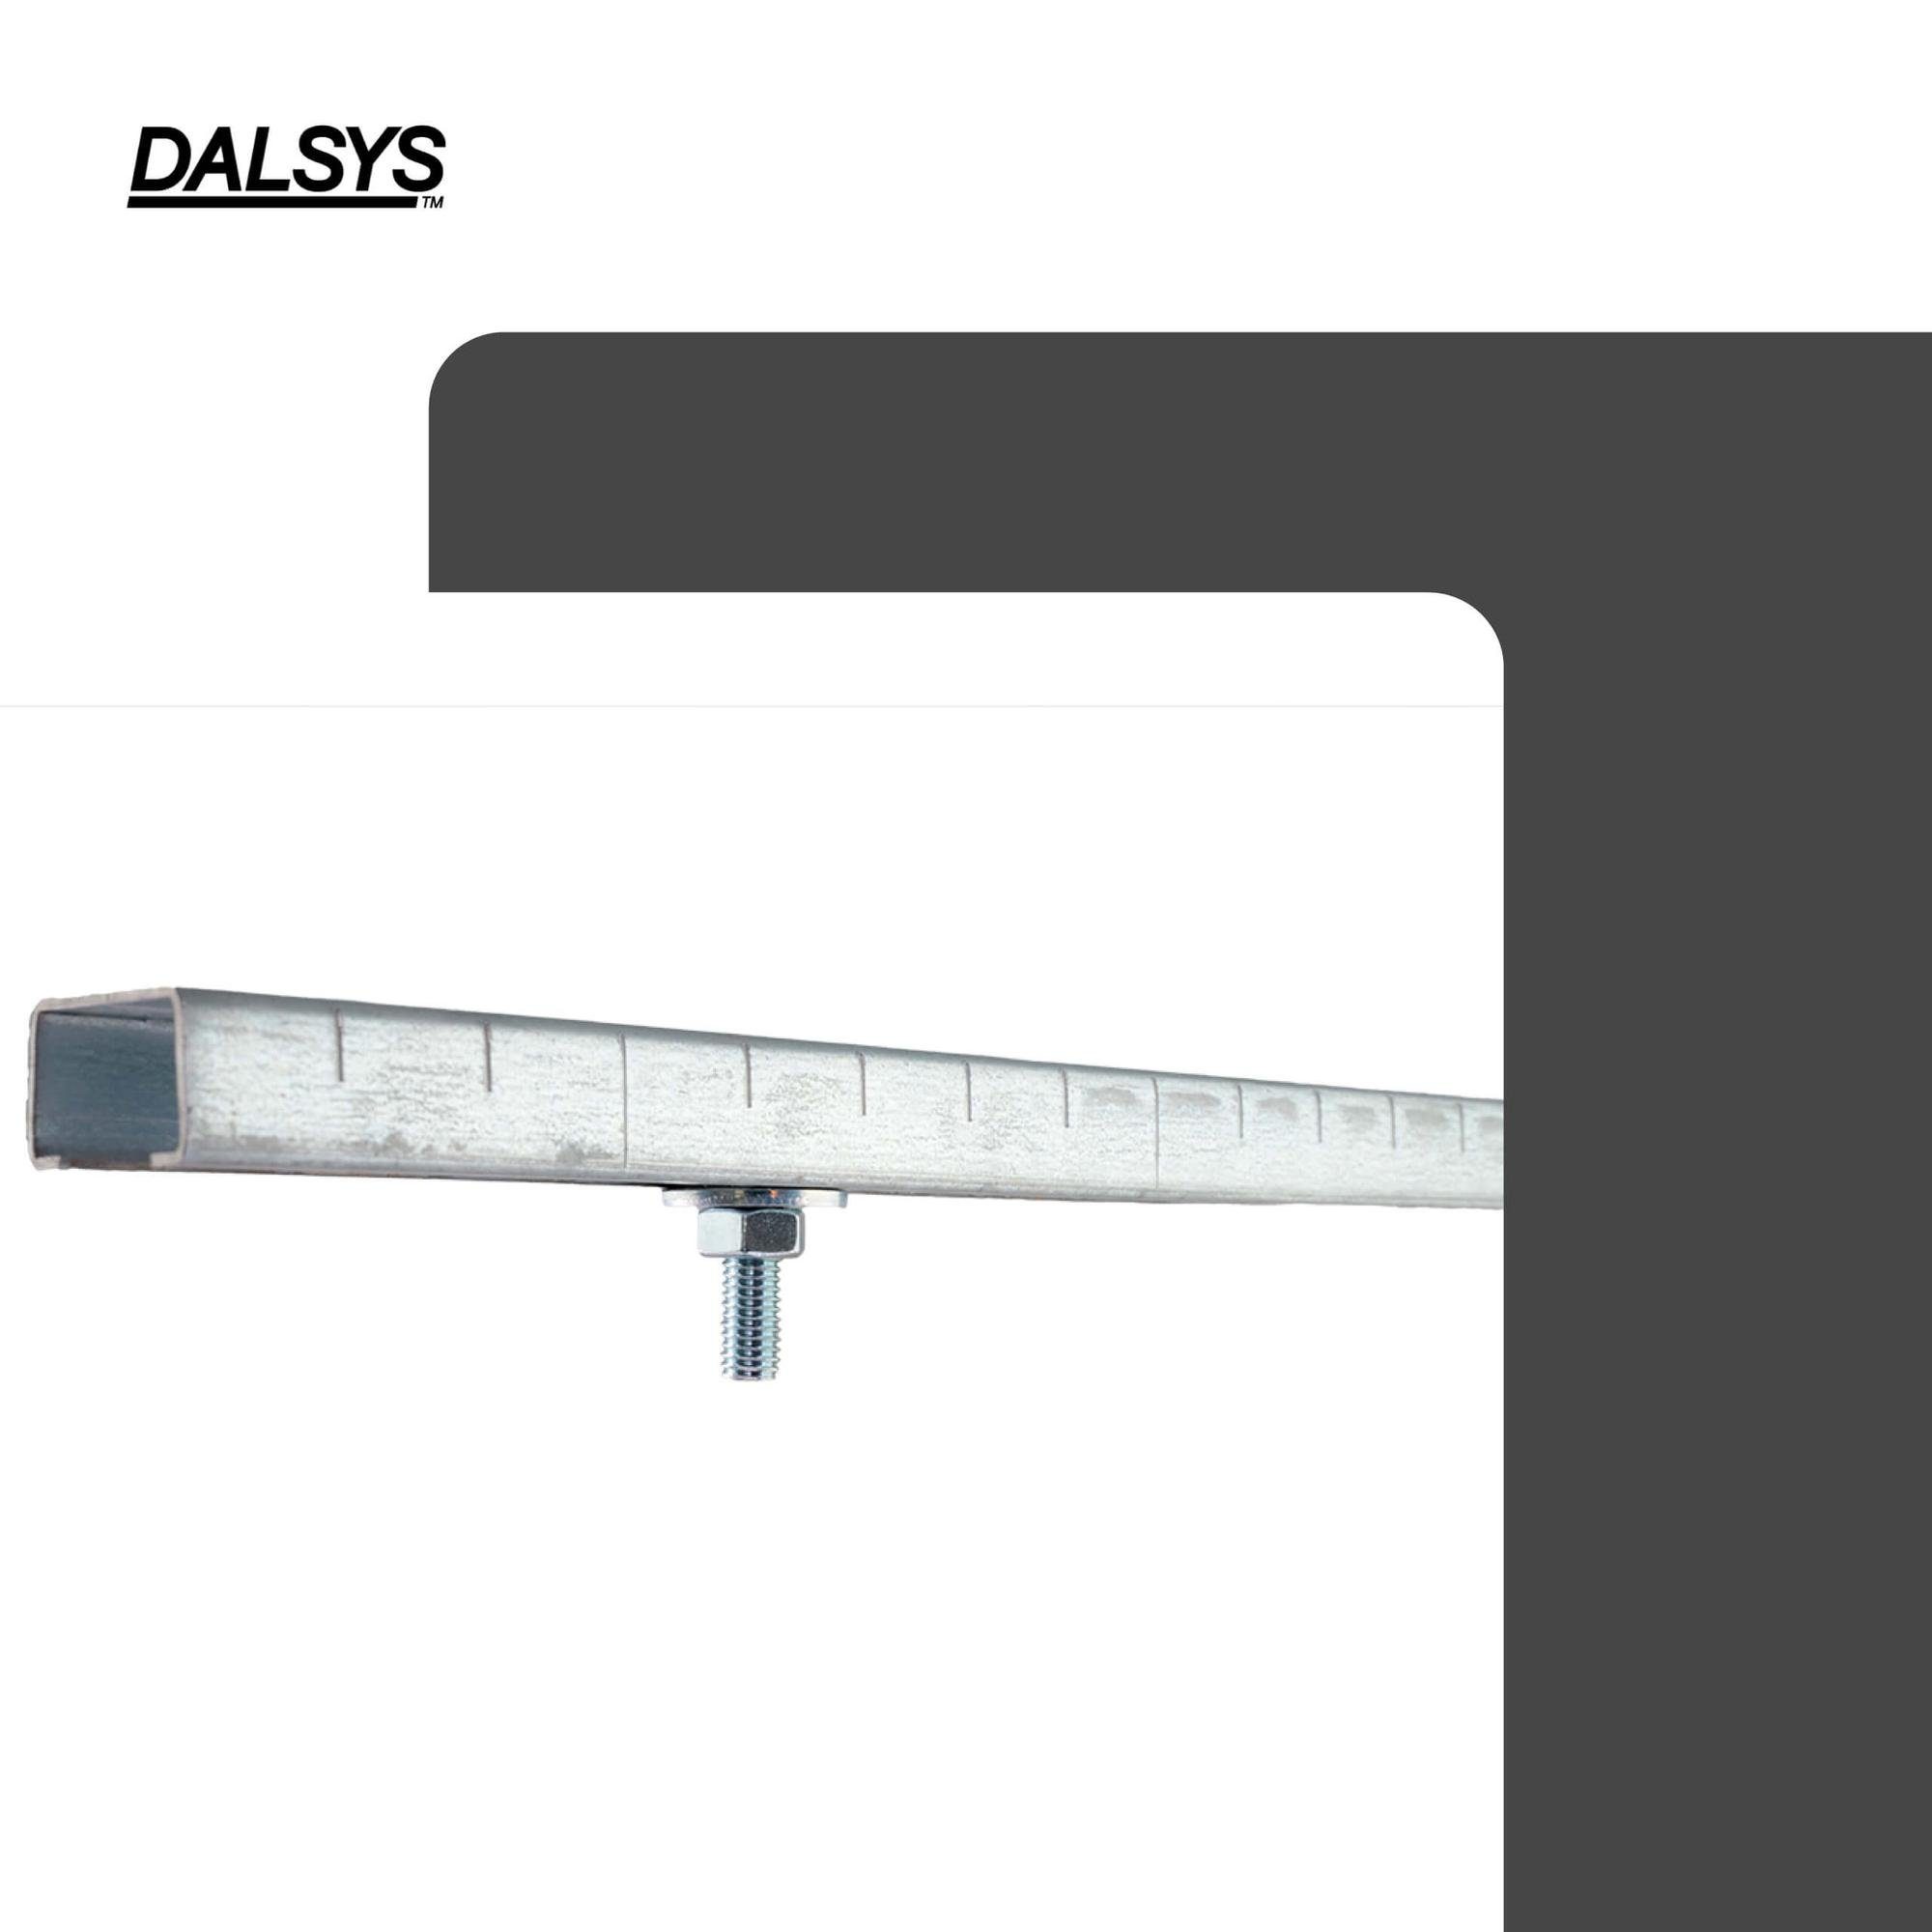 verzinkter Stahl (Hammerkopfschraube Installationsschiene, für zur Montageschiene 50 St), Bauschraube, einer 38/40, Dalsys Anwendung an